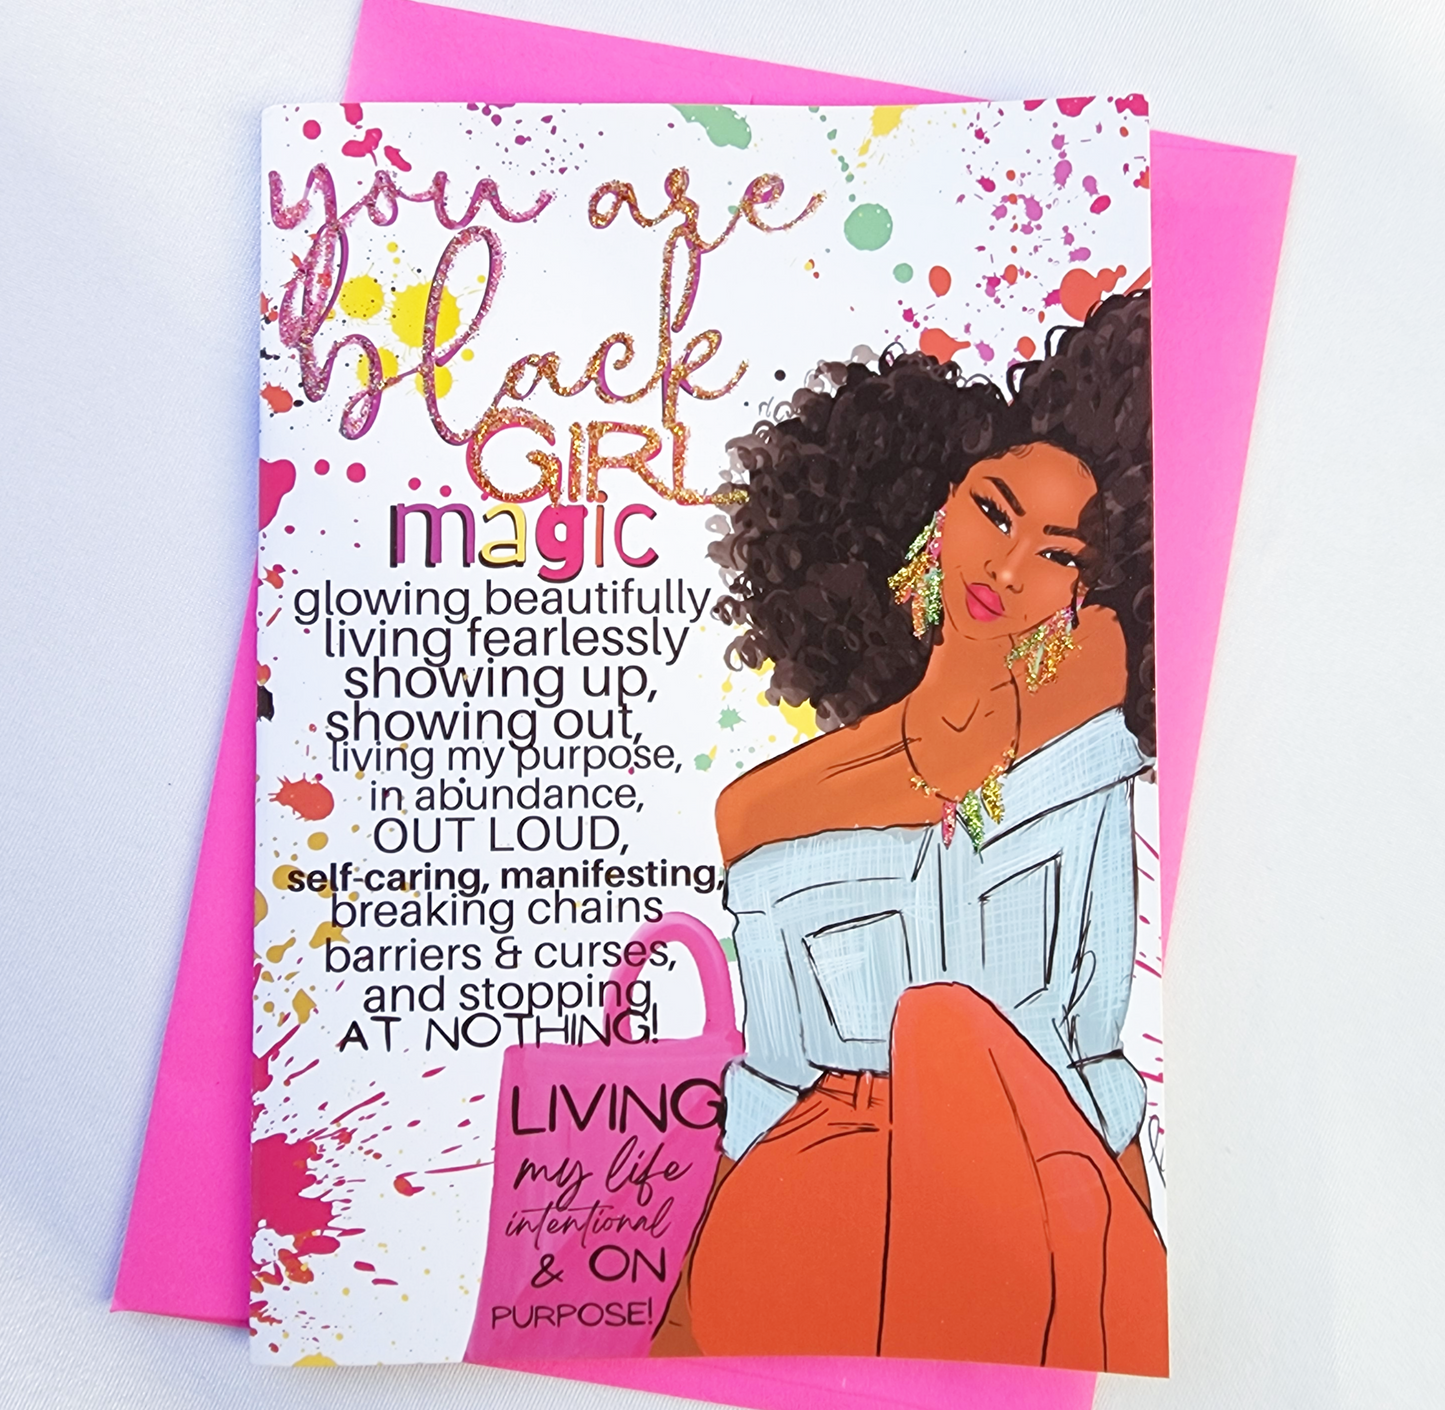 Black Girl Magic - Birthday Card